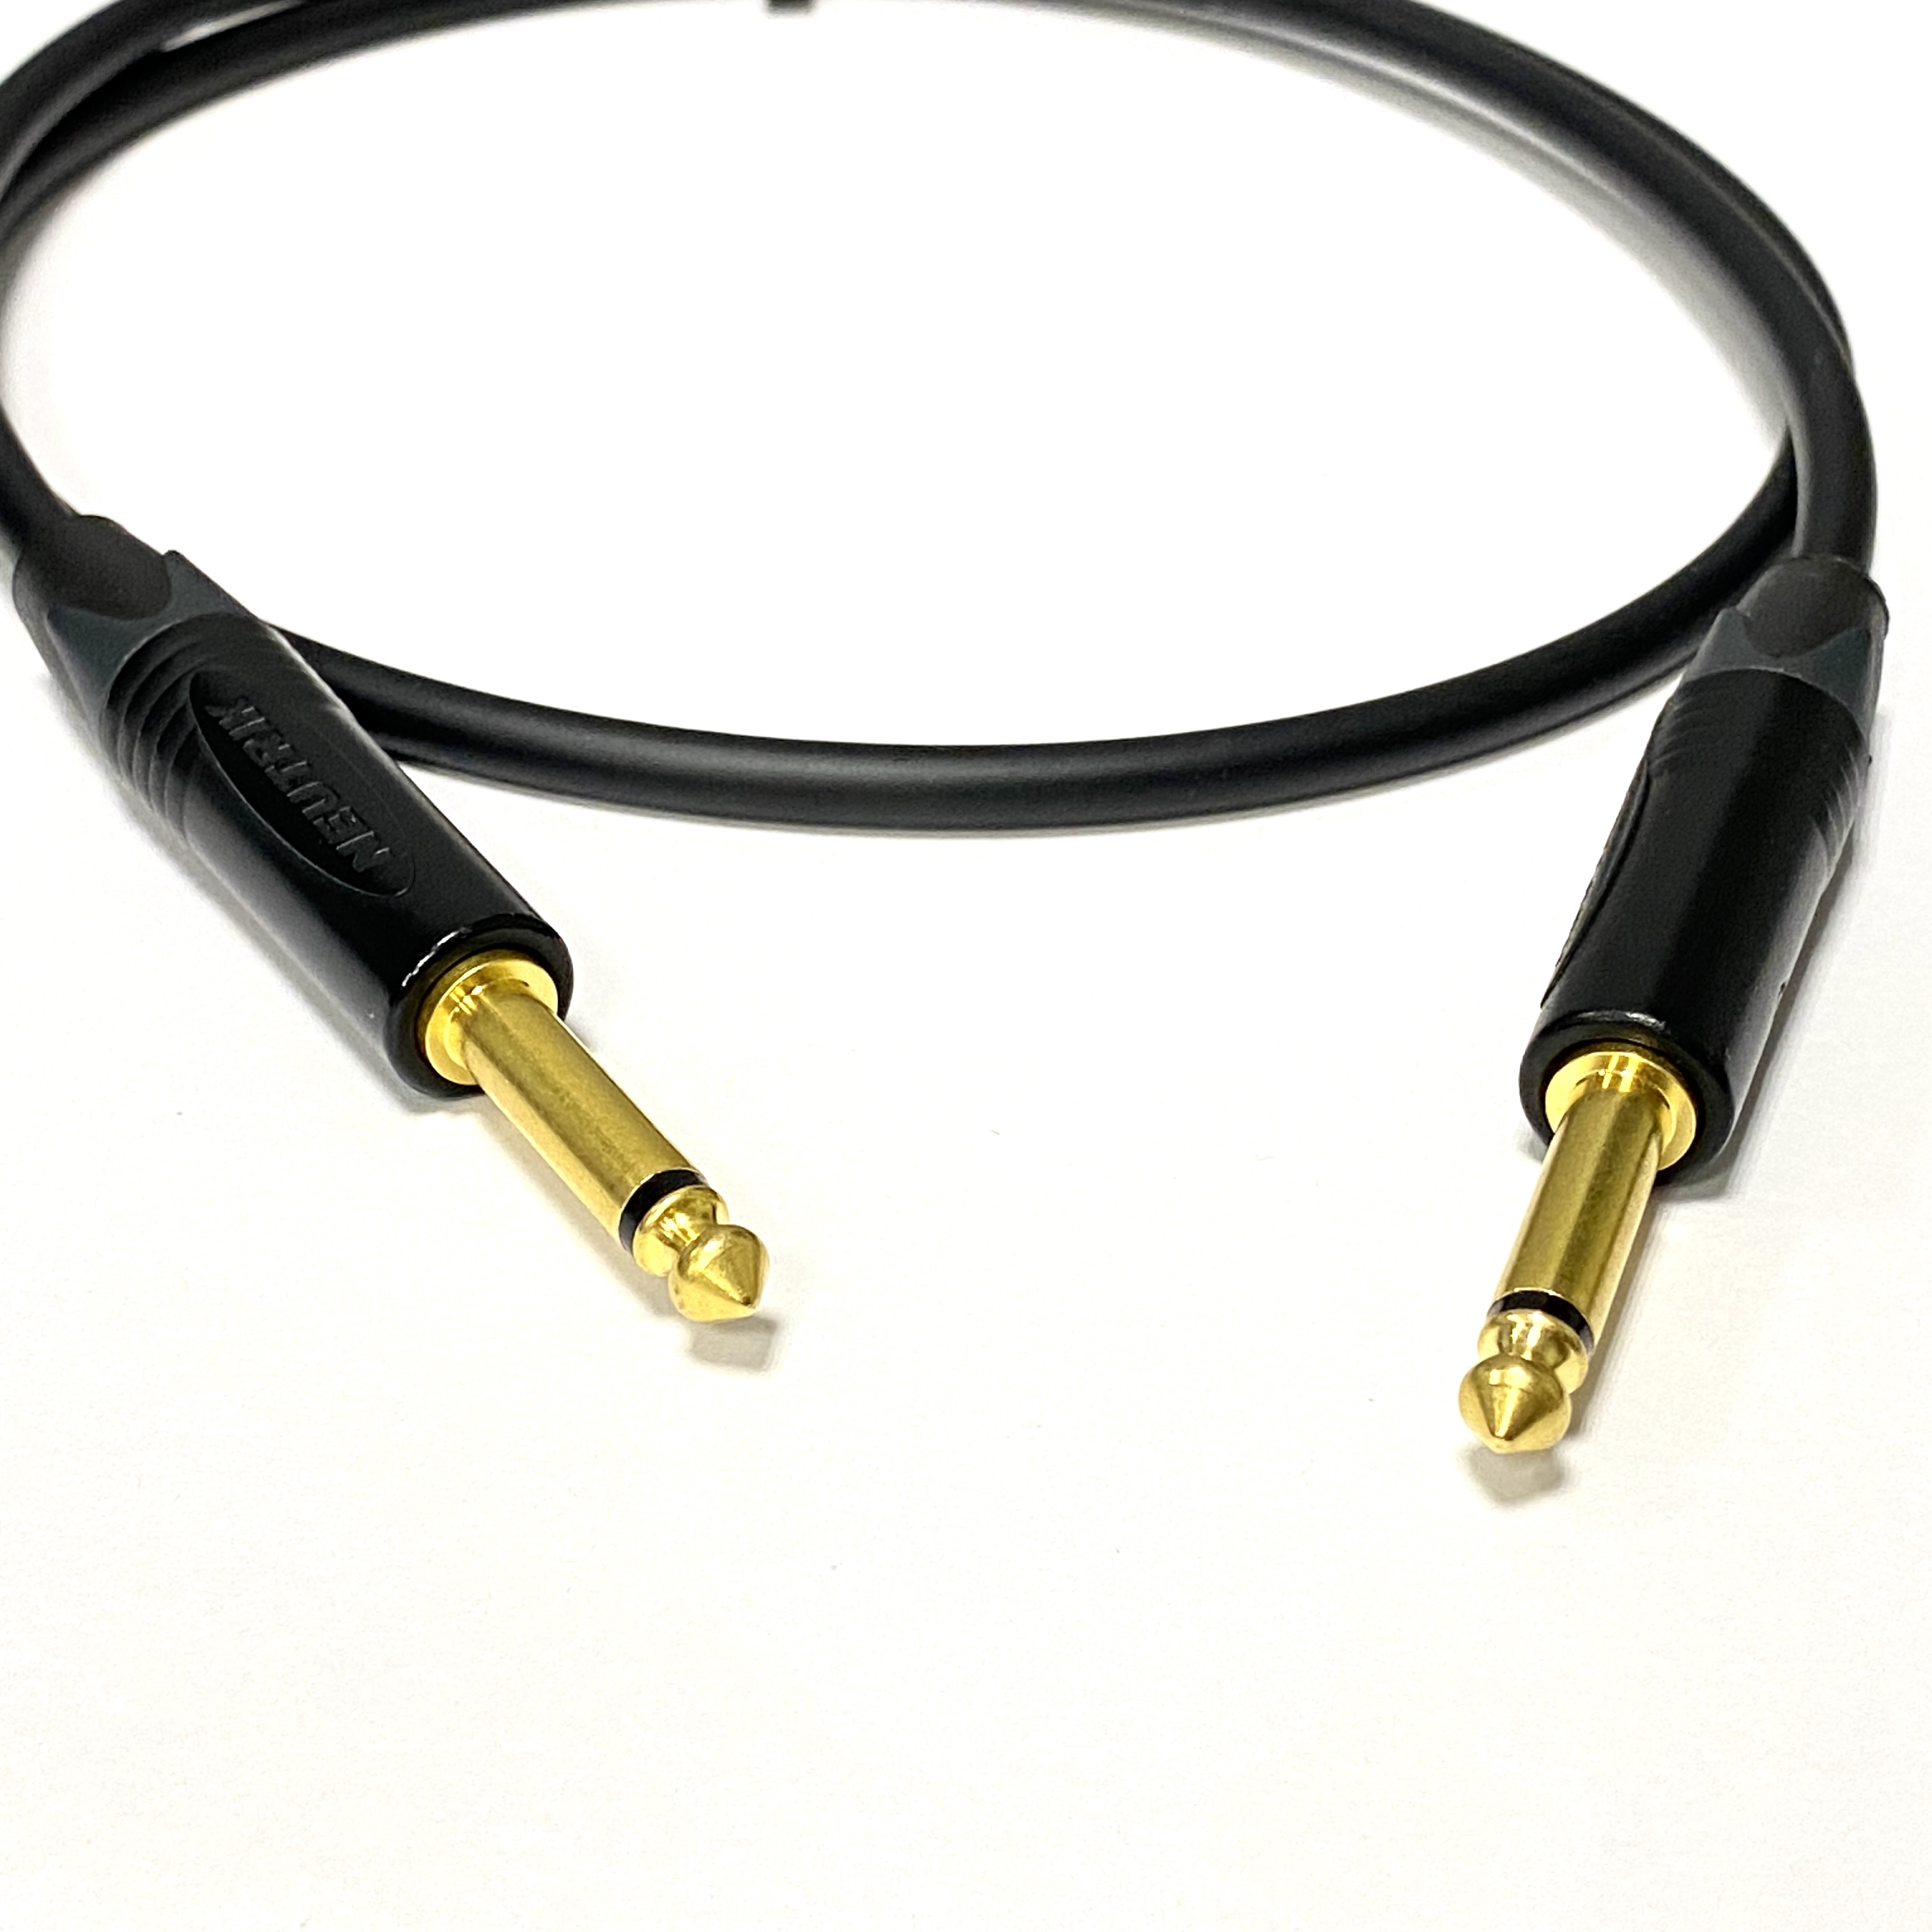 5m профессиональный инструментальный аудио кабель Jack - Jack 6.3 mm mono Neutrik GOLD Кабели  Jack - Jack 6.3 mm mono стандартные (ins1)